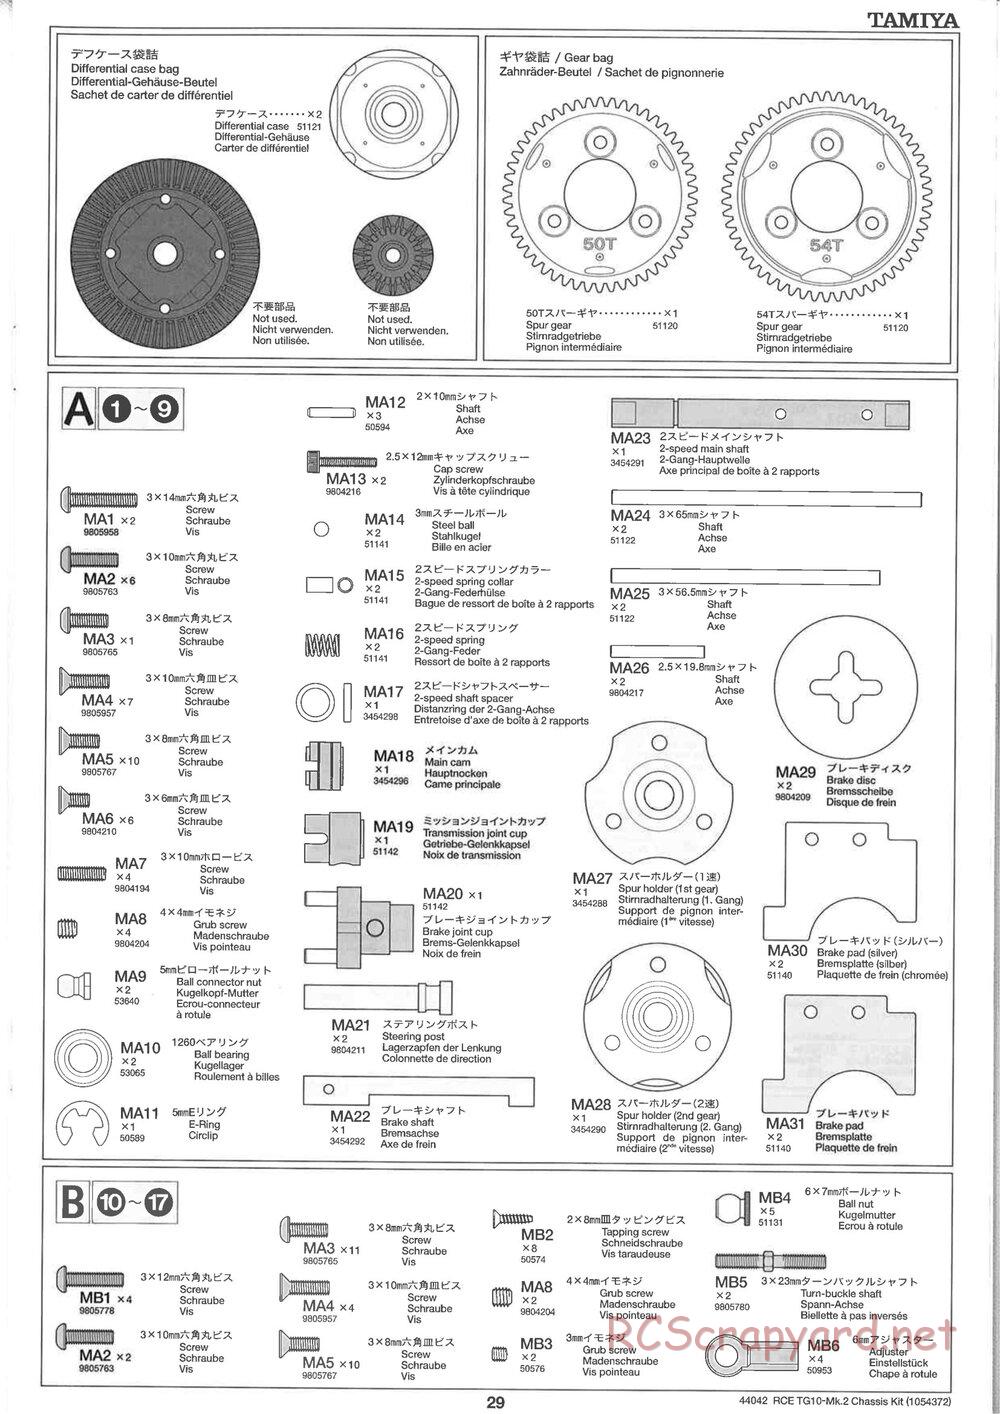 Tamiya - TG10 Mk.2 Chassis - Manual - Page 29